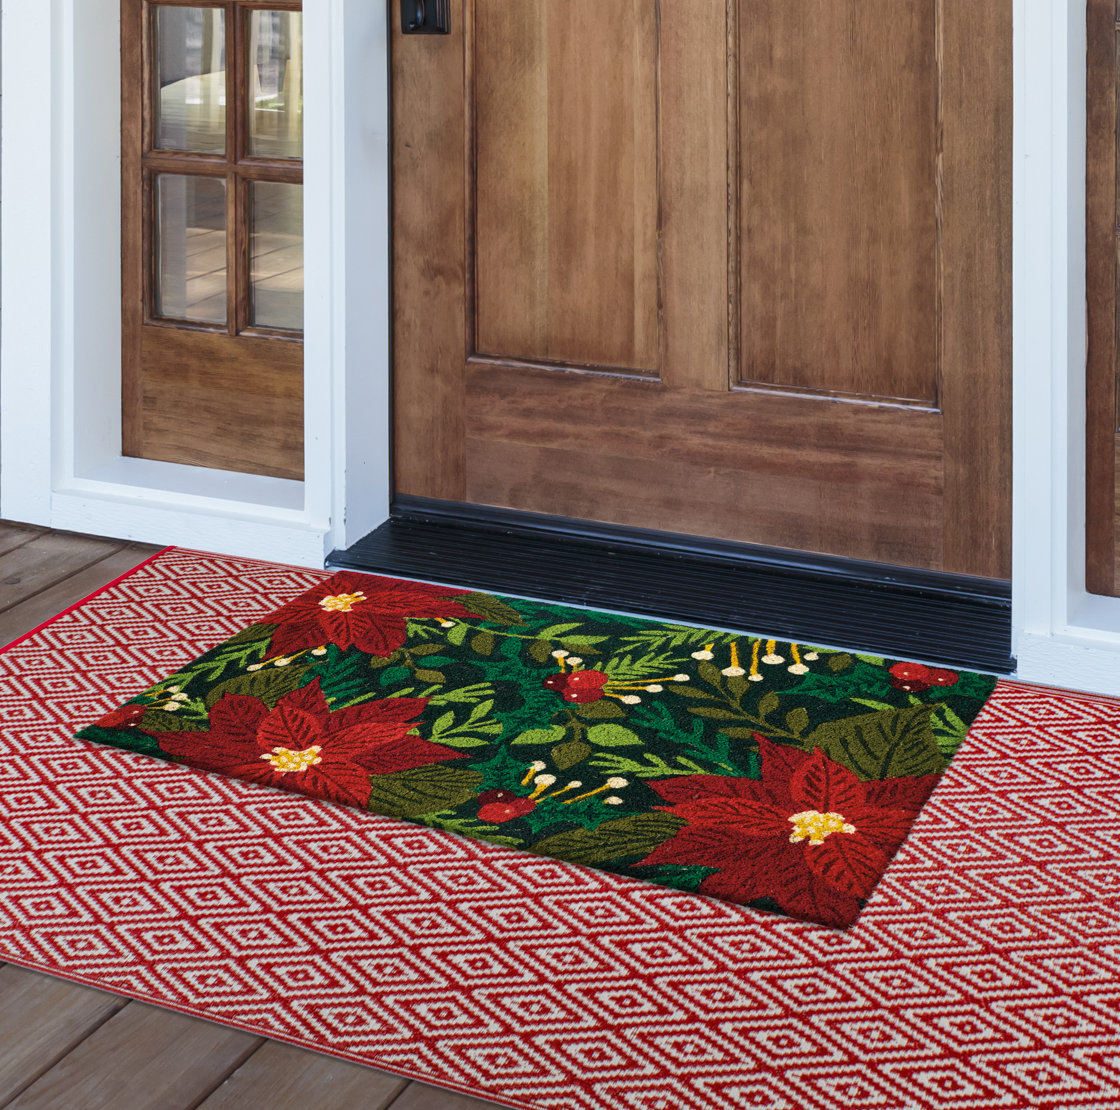 Doormat Rug door mat Waterproof Indoor Color Decor Front Holiday